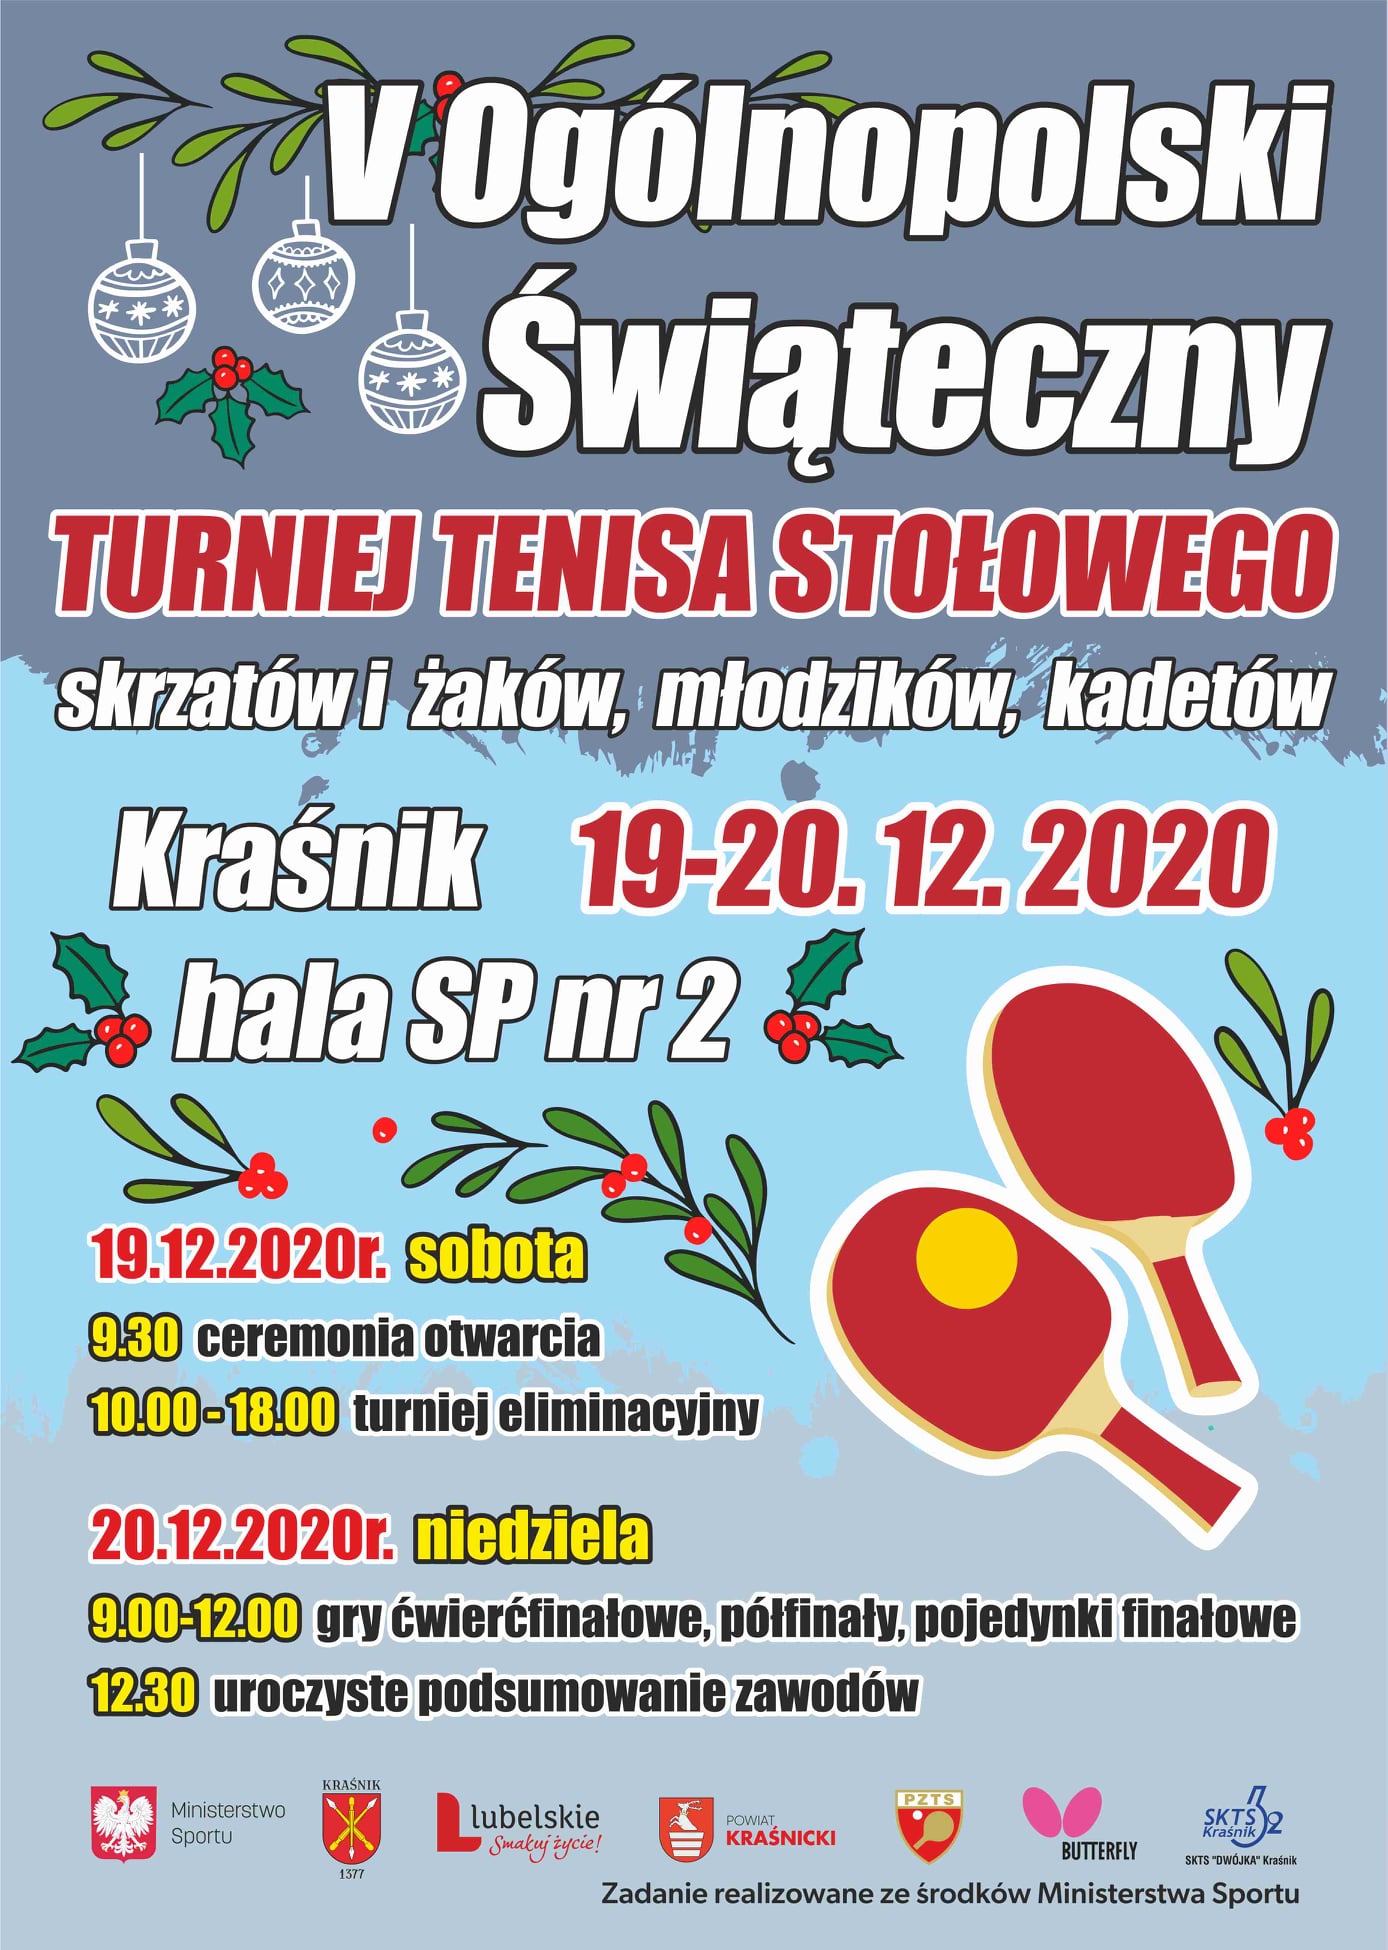 Plakat na którym znajdują się informację dotyczące V Ogólnopolskiego Świątecznego Turnieju Tenisa Stołowego w Kraśniku, który odbędzie się 19-20 grudnia 2020 roku.